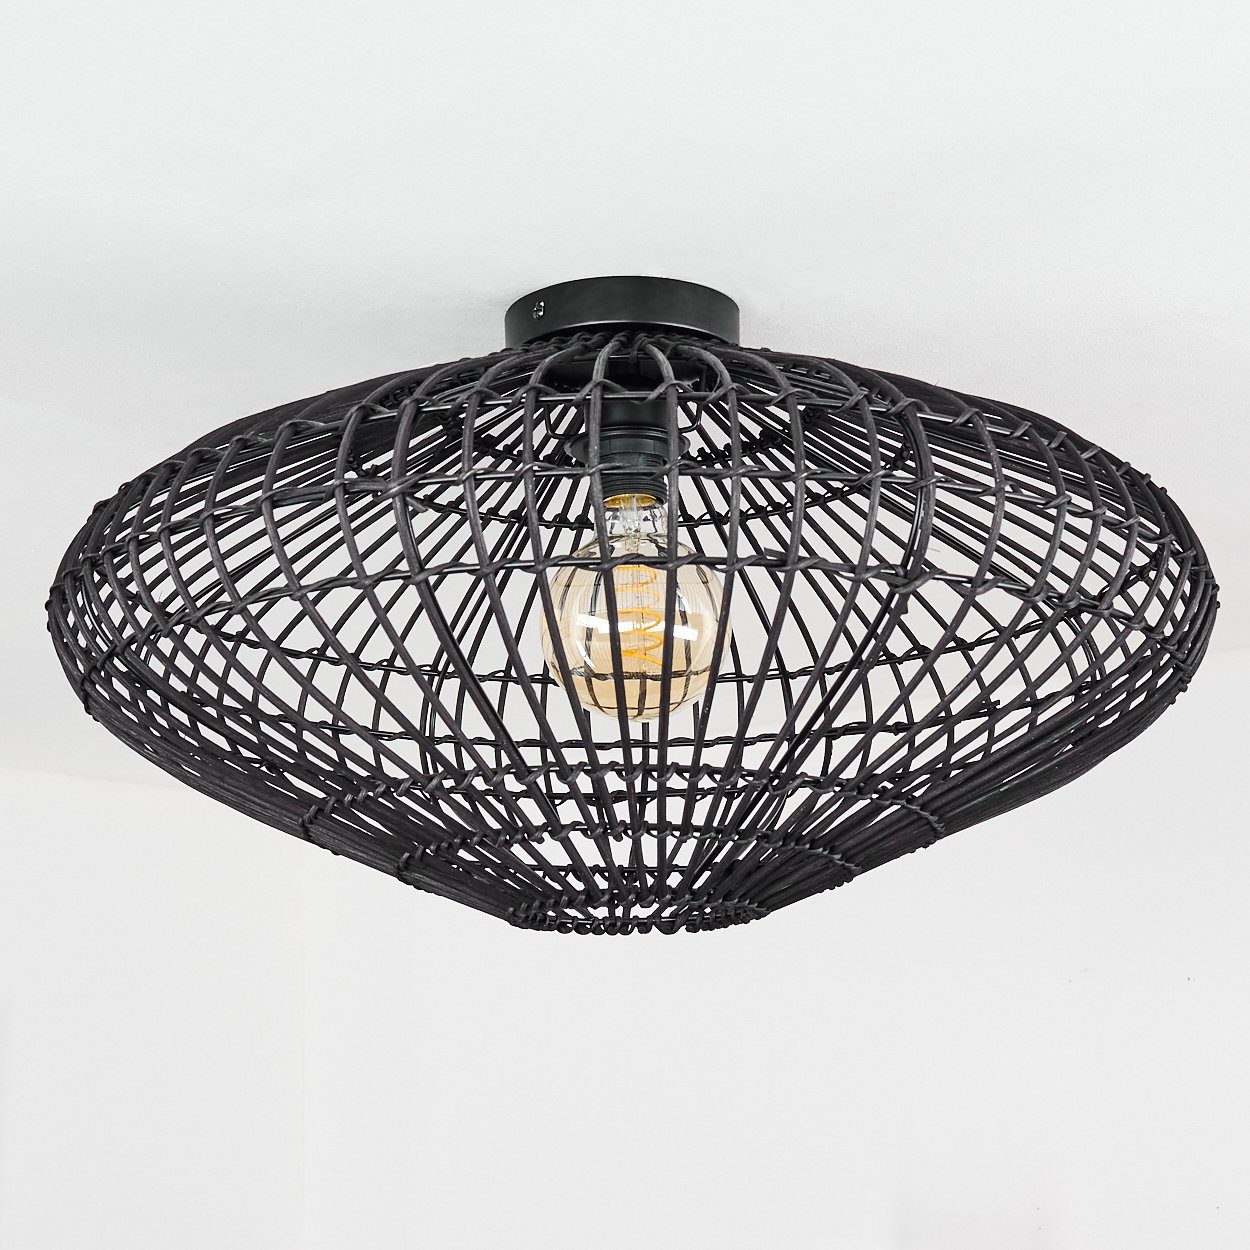 Metall/Holz Deckenlampe ohne »Mondragone« in der und 1xE27 Schwarz, aus hofstein Gitterschirm Lampe Leuchtmittel, an moderne Decke, Lichtspiel Deckenleuchte mit